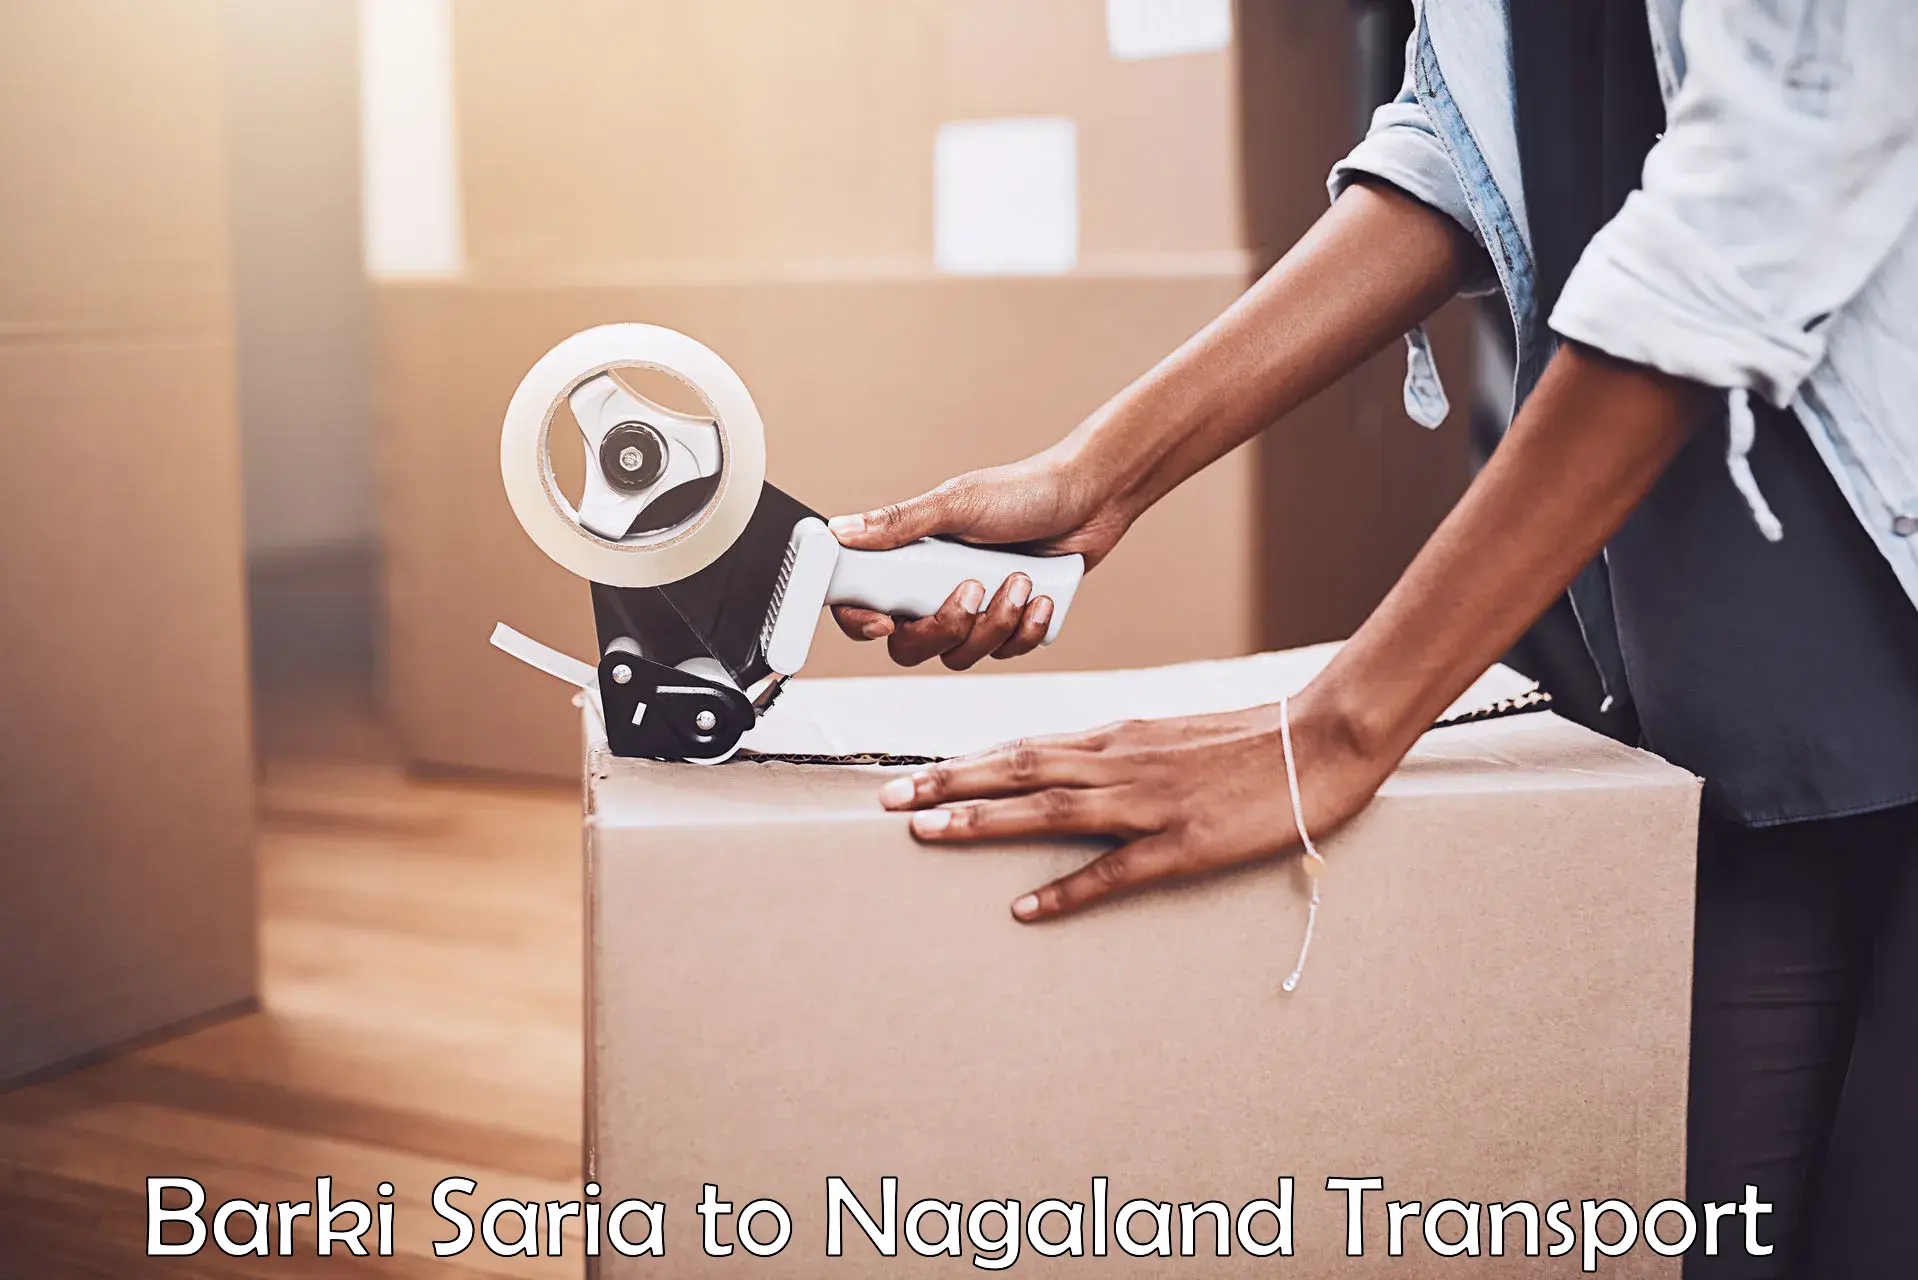 Air freight transport services Barki Saria to Nagaland